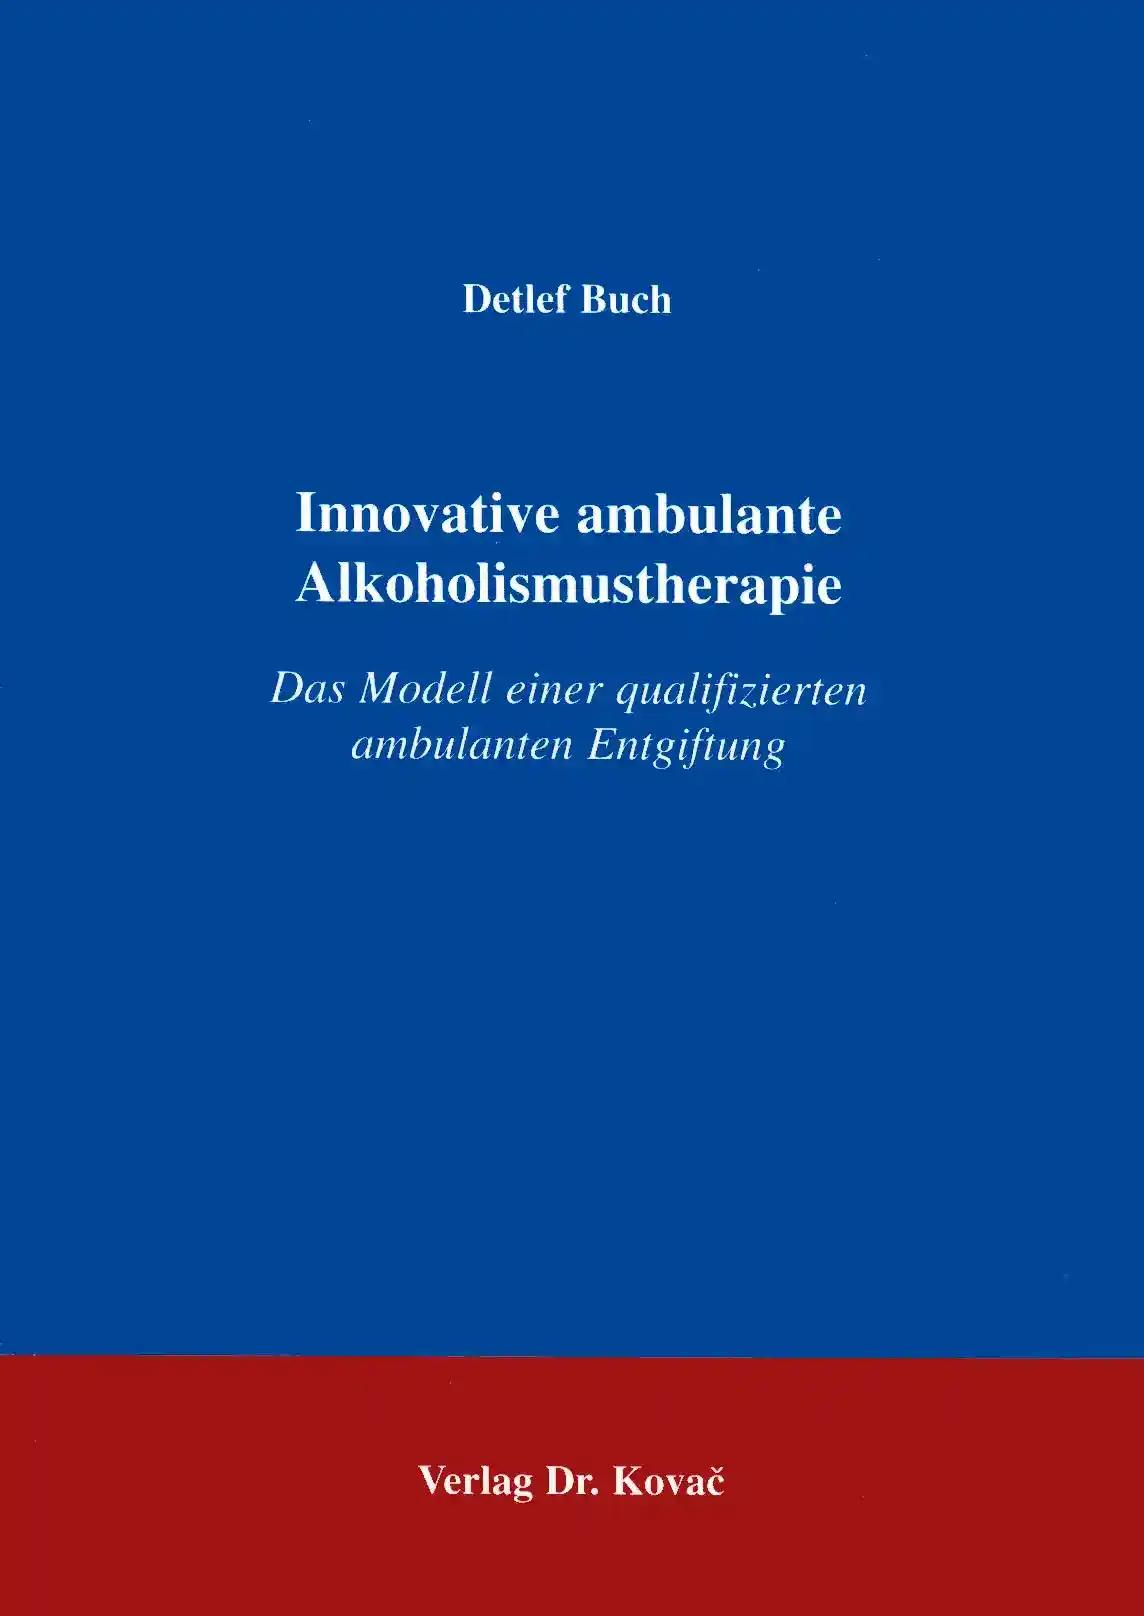 Innovative ambulante Alkoholismustherapie, Das Modell einer qualifizierten ambulanten Entgiftung - Detlef Buch